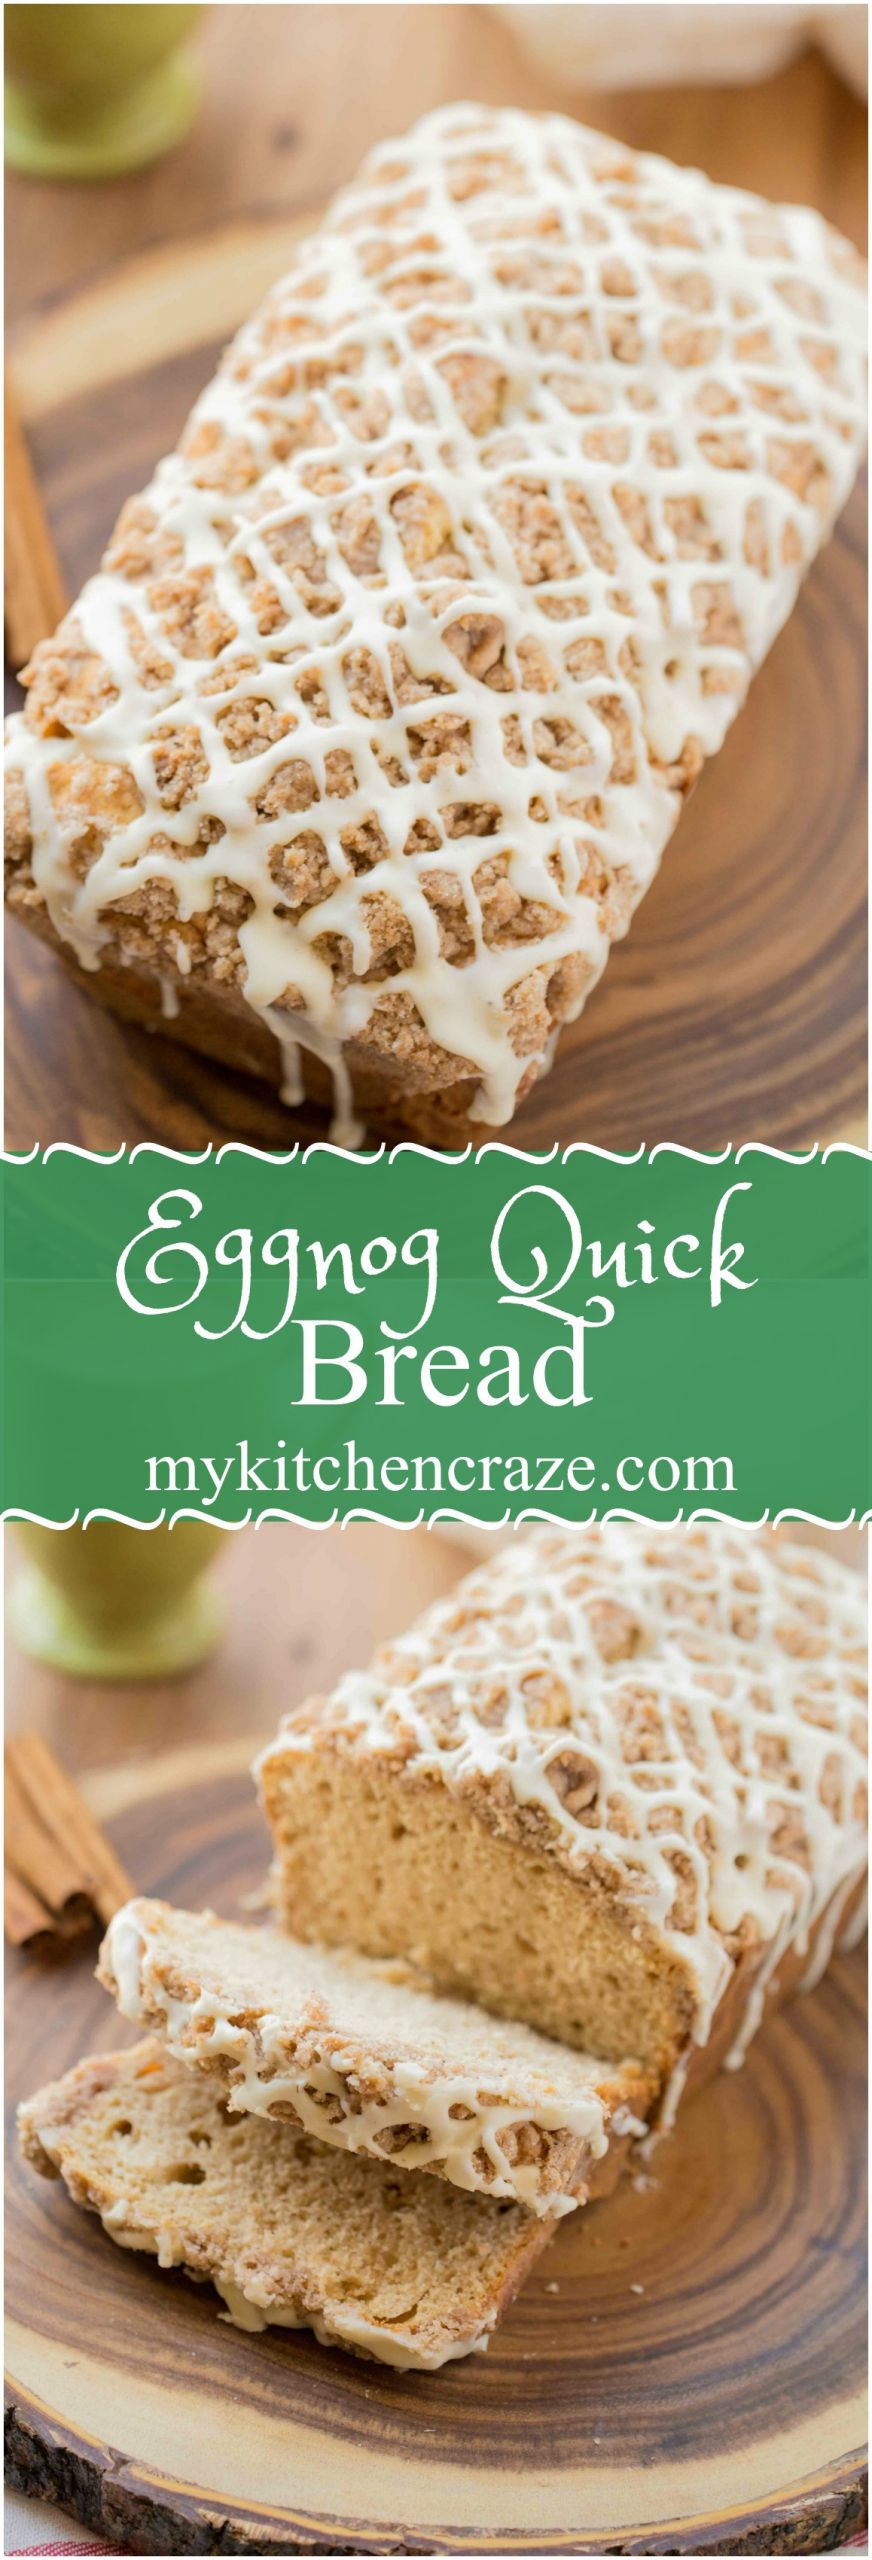 Holiday Quick Bread Recipes
 Eggnog Quick Bread My Kitchen Craze